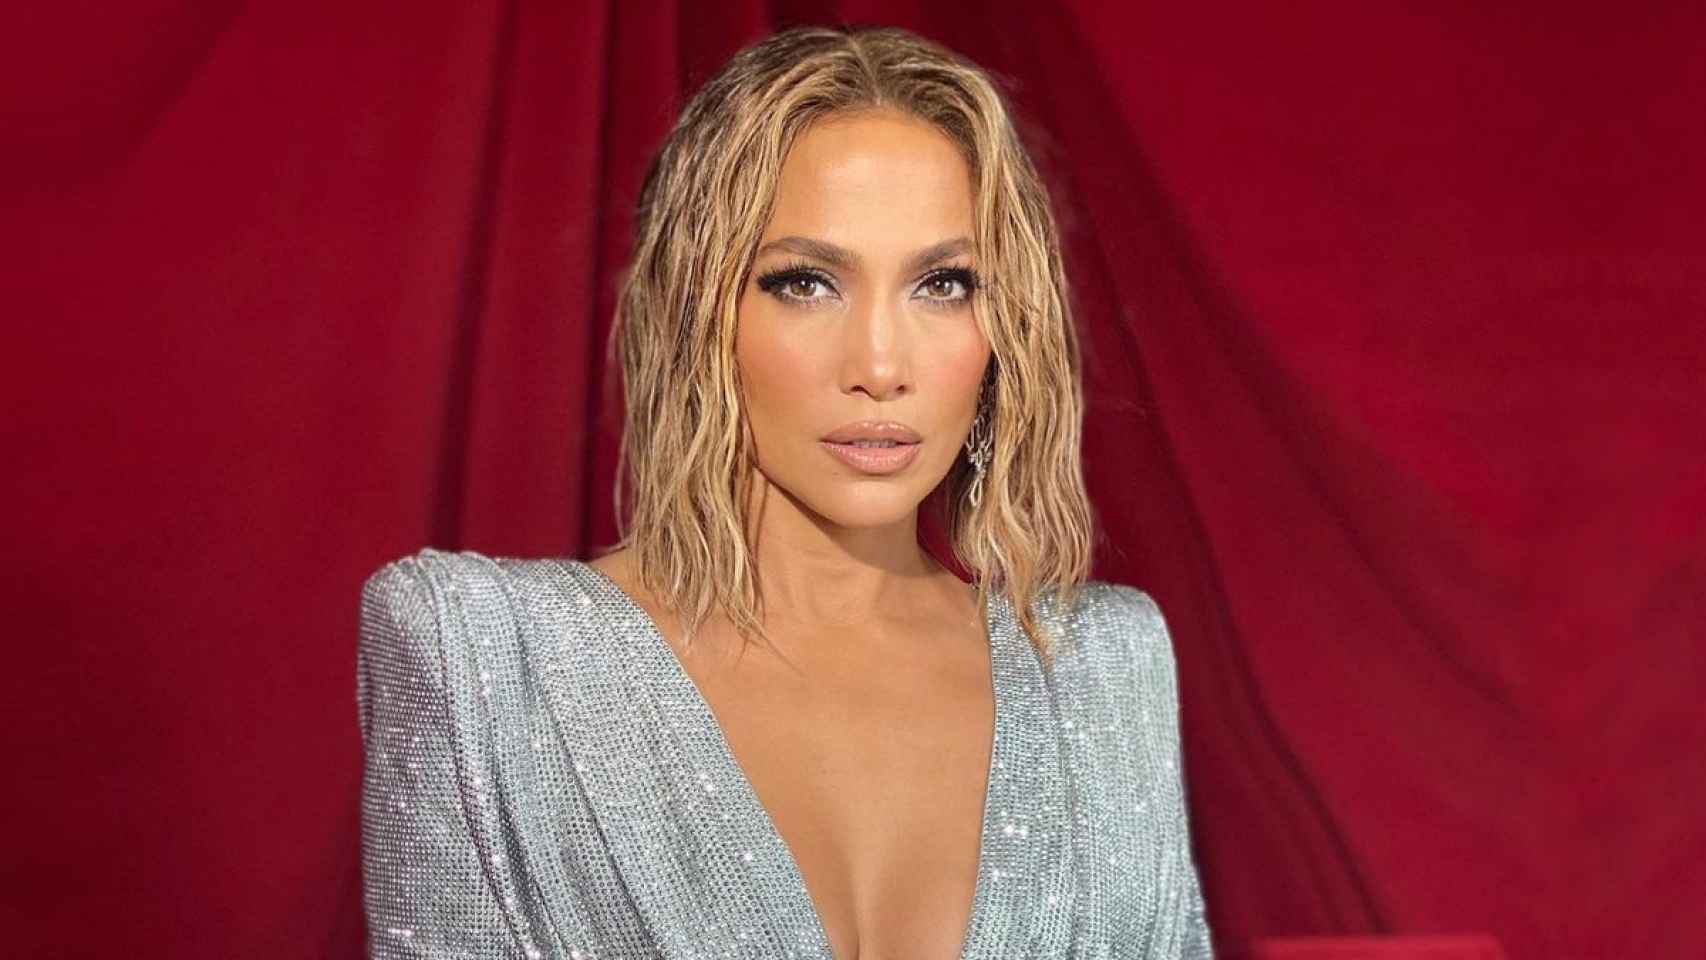 Jennifer Lopez ha sorprendido a todos mostrando su cuerpo completamente desnudo en su última publicación.